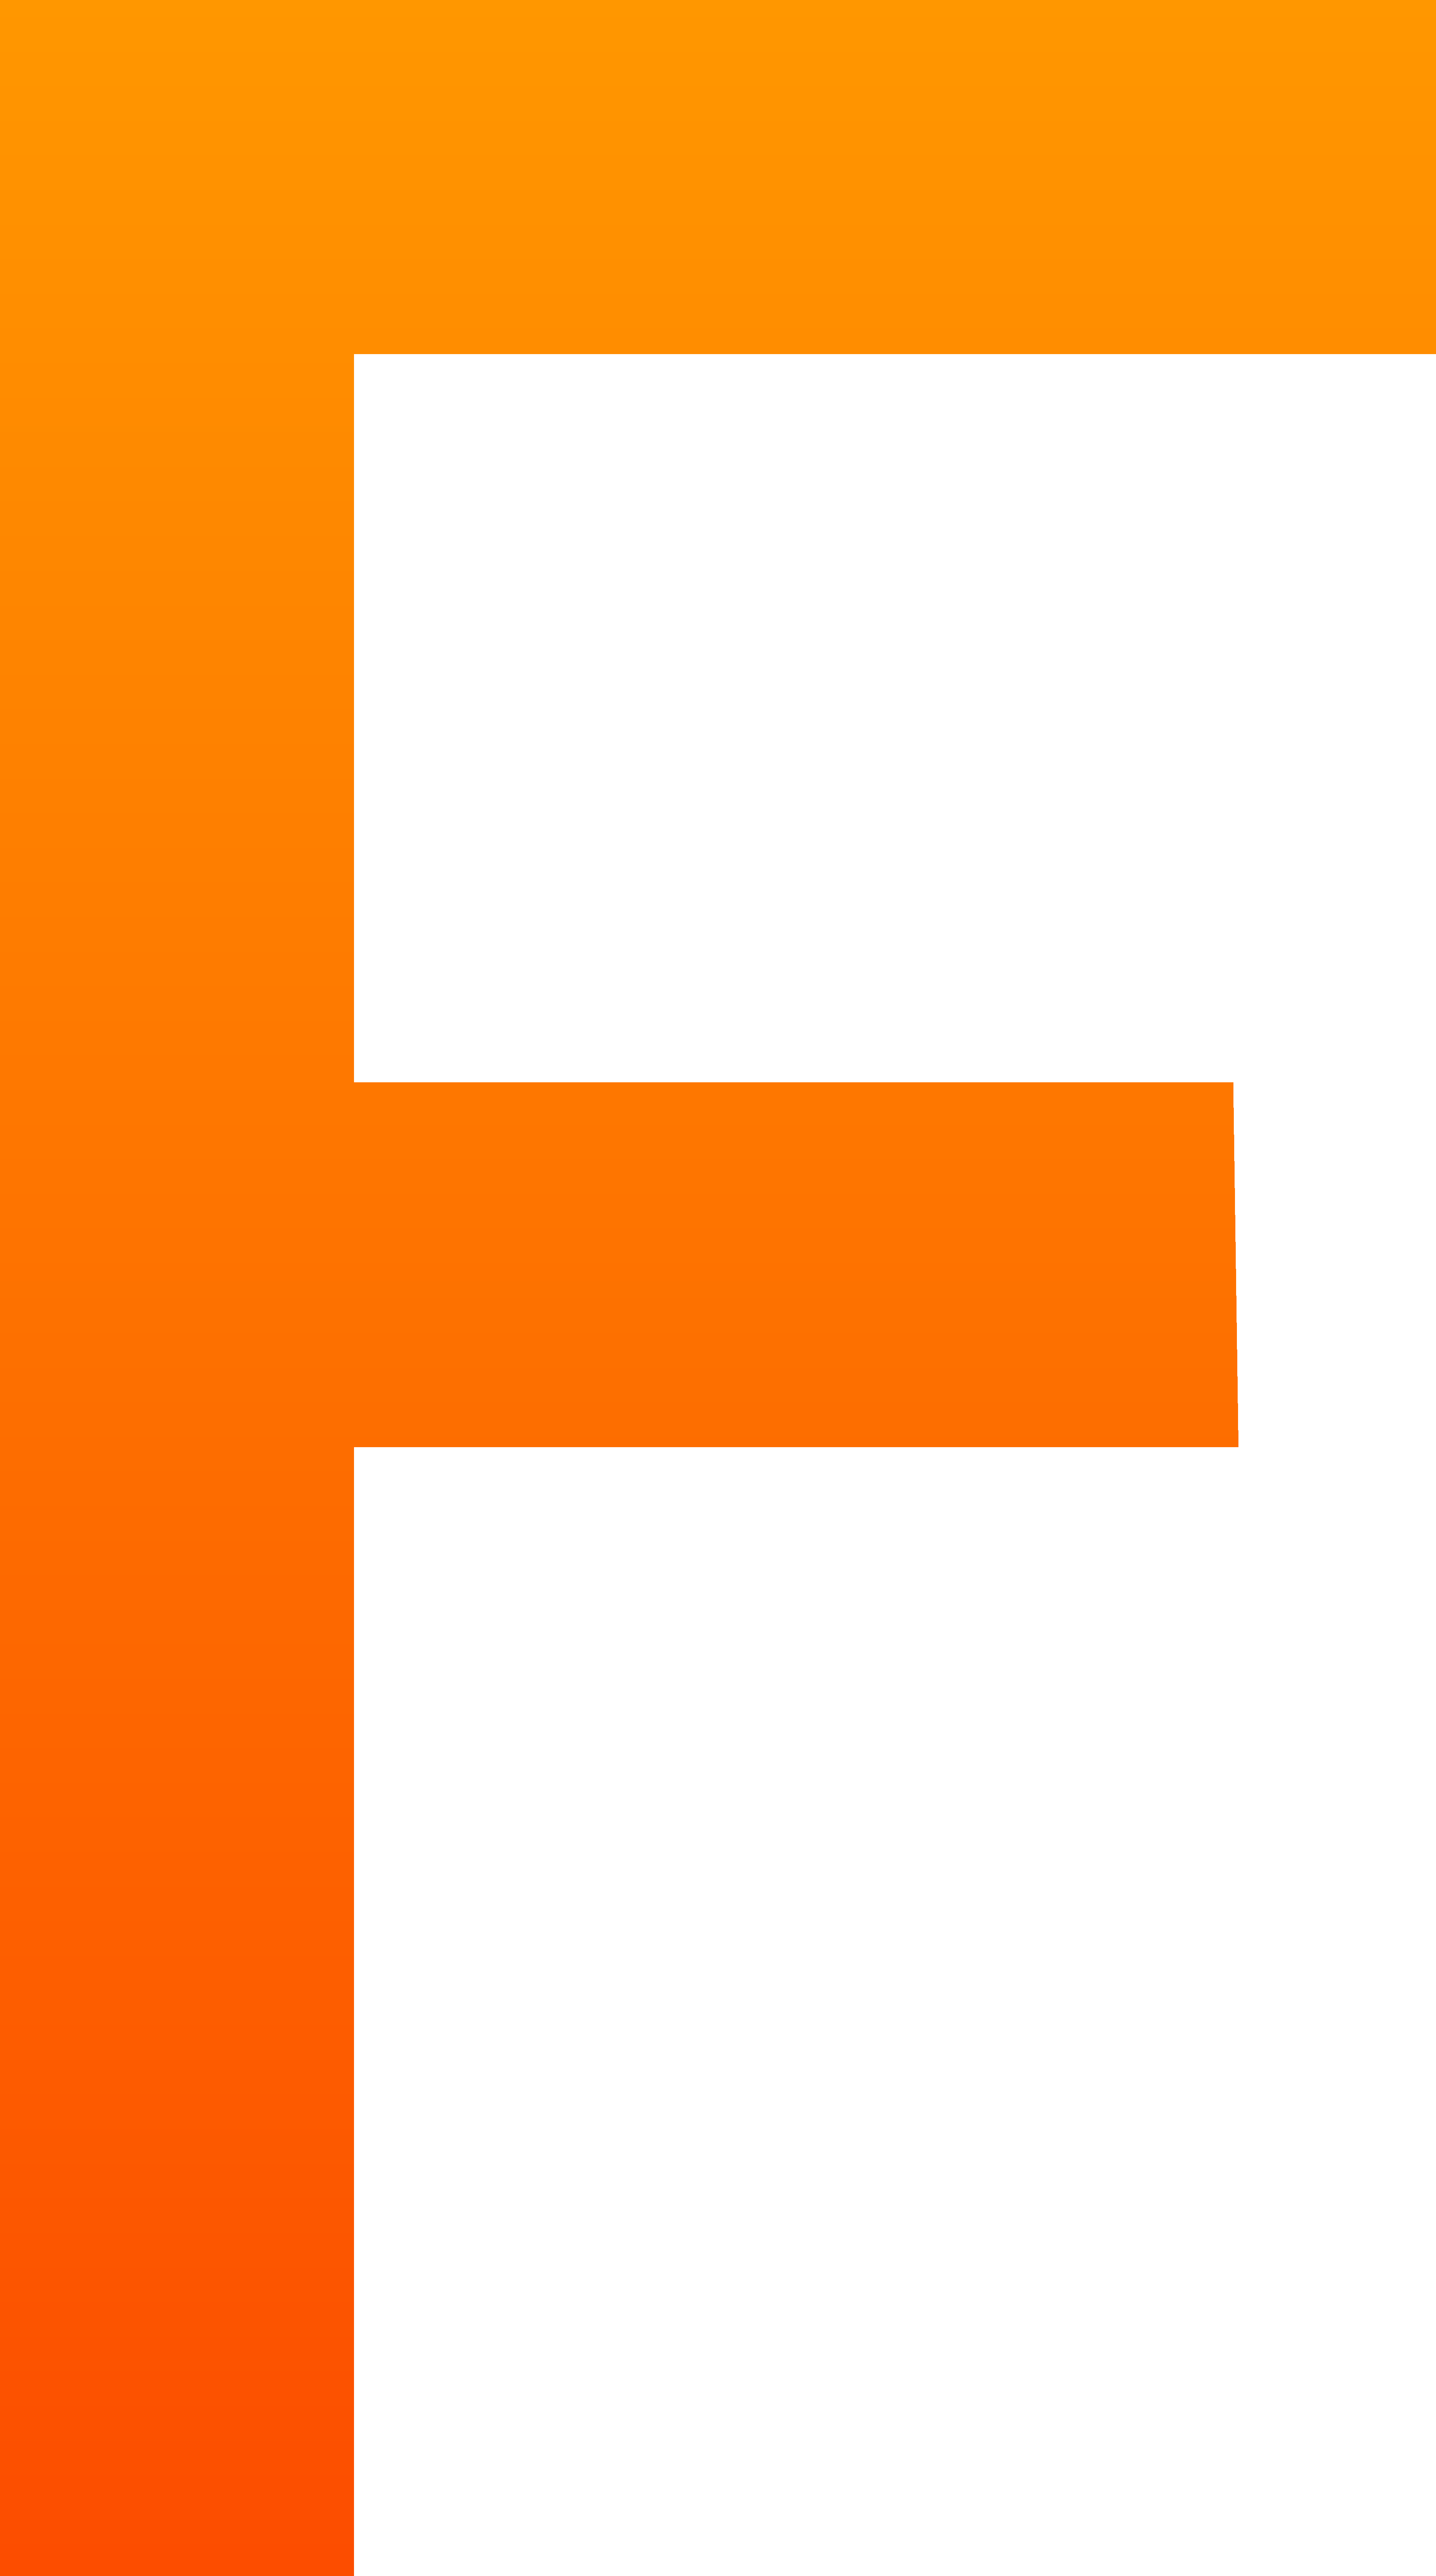 Square clipart orange. Letter f clip art